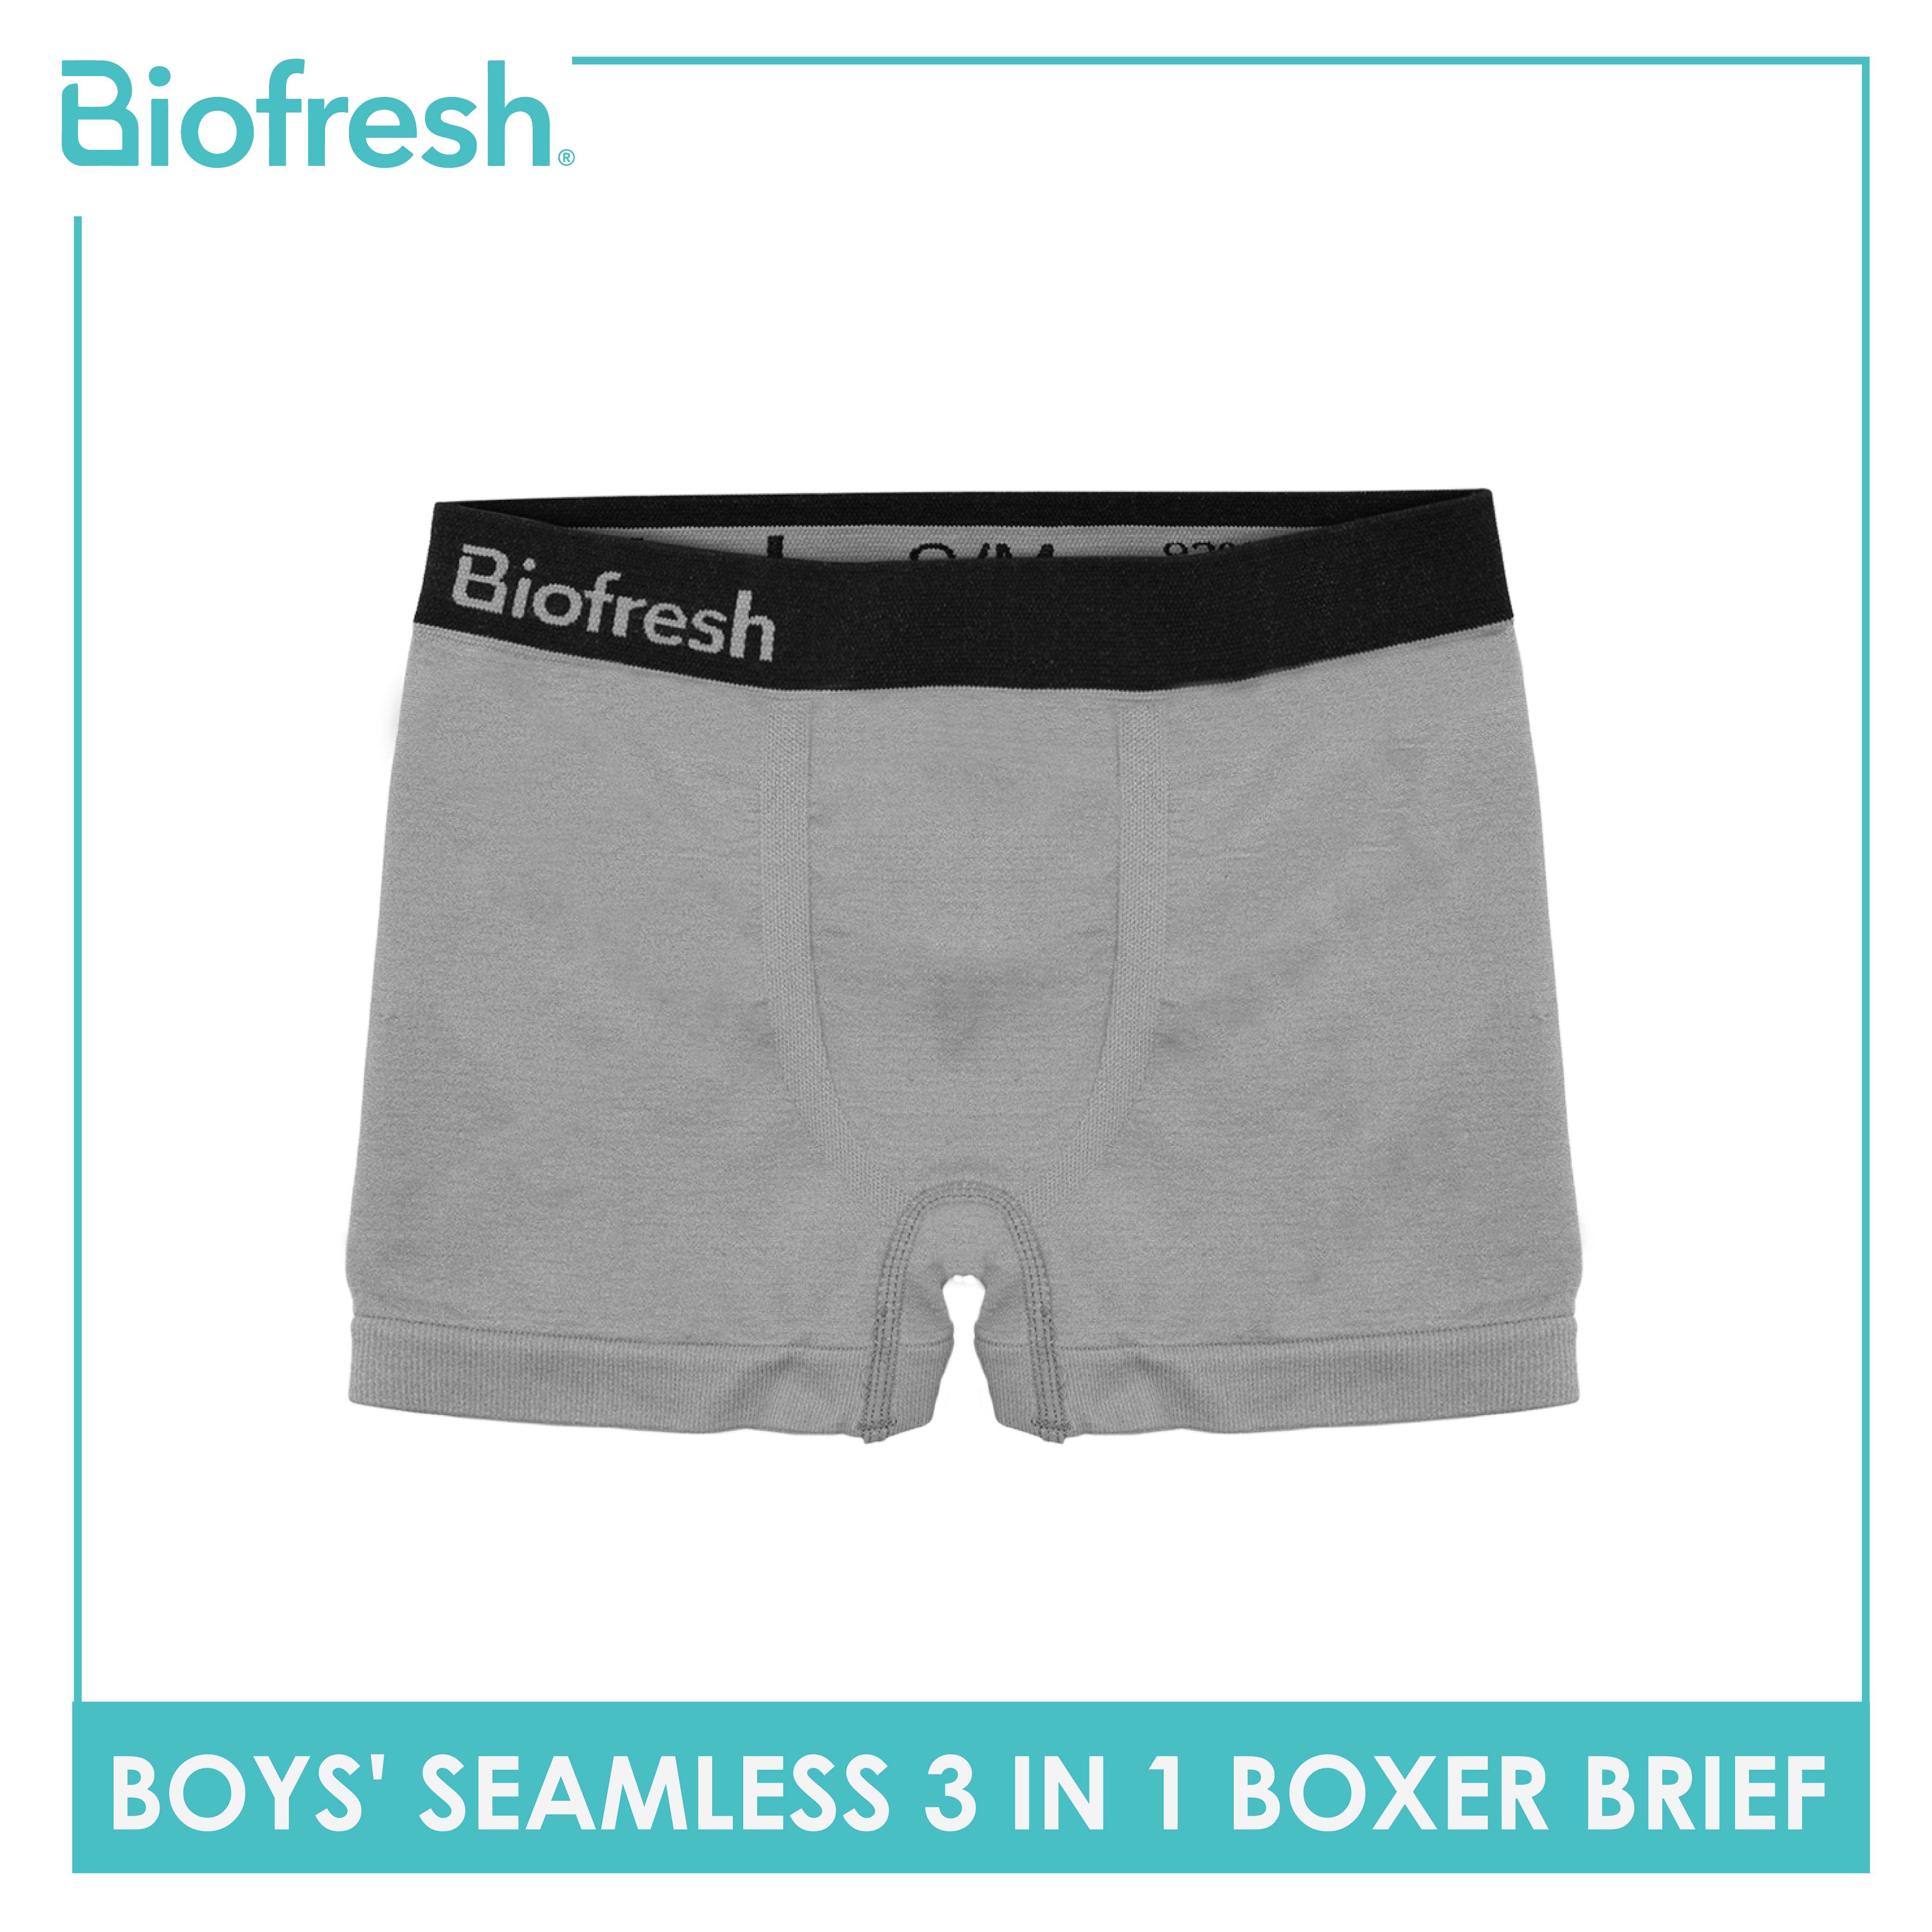 Boys' Seamless Boxer Brief